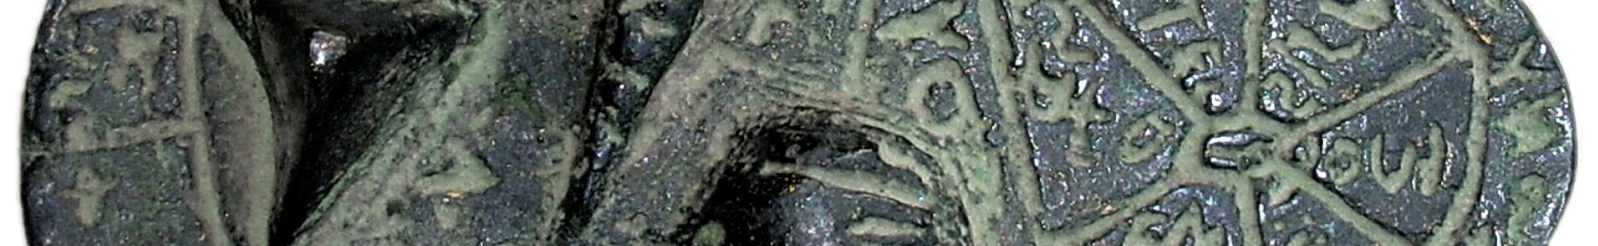 Una terracota de Donatello en Colnaghi